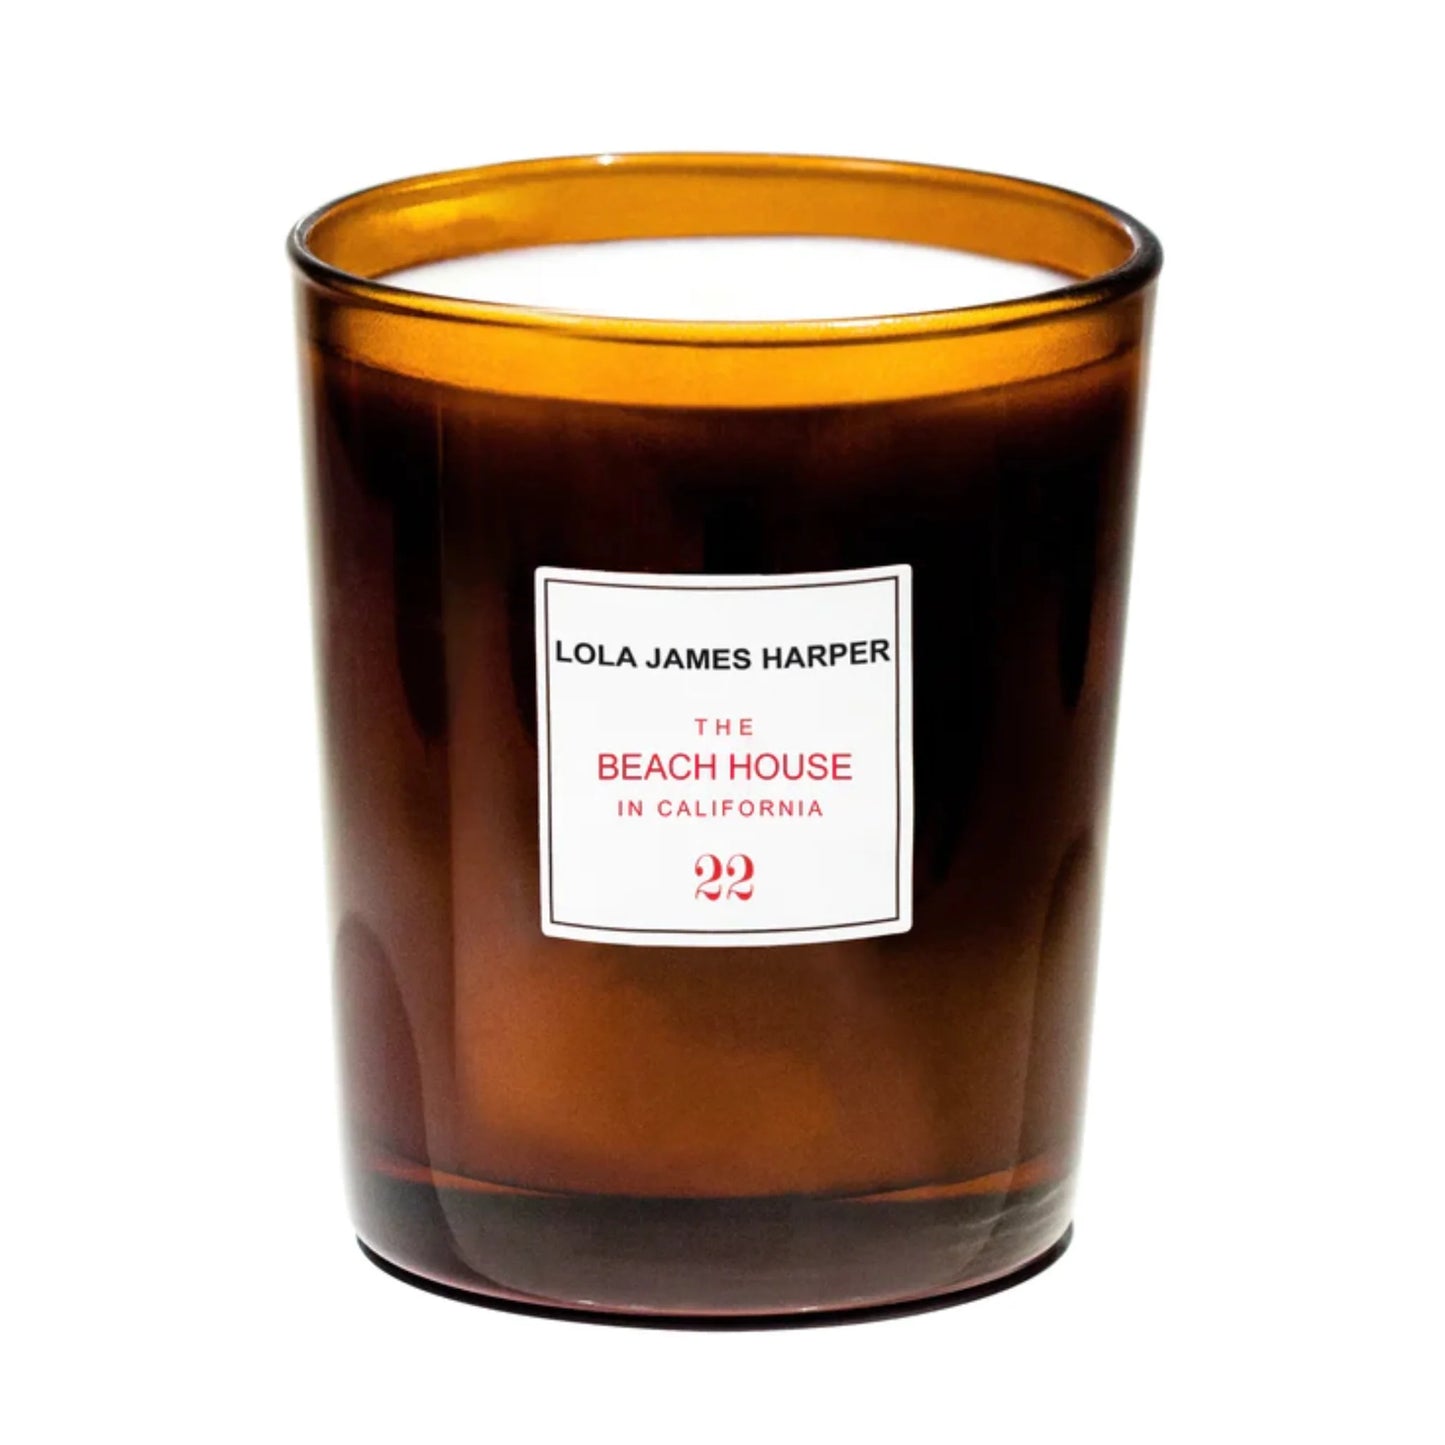 Lola James Harper - Candles 190g